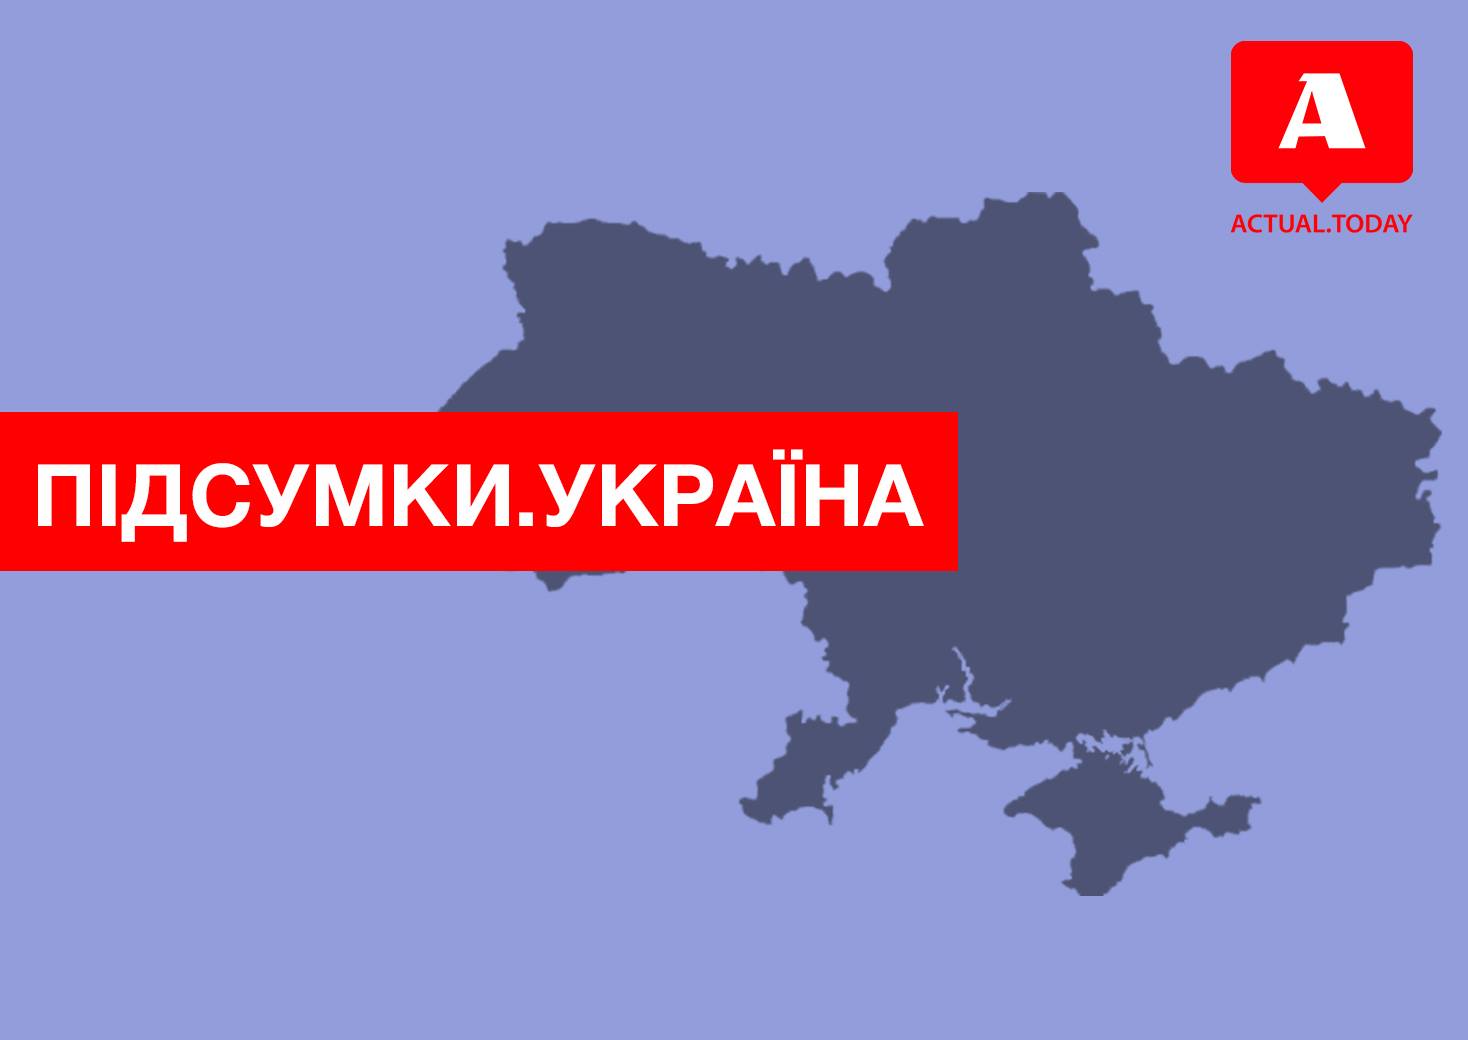 Послание мира, летние выходные, штраф для президента – главные новости Украины за понедельник